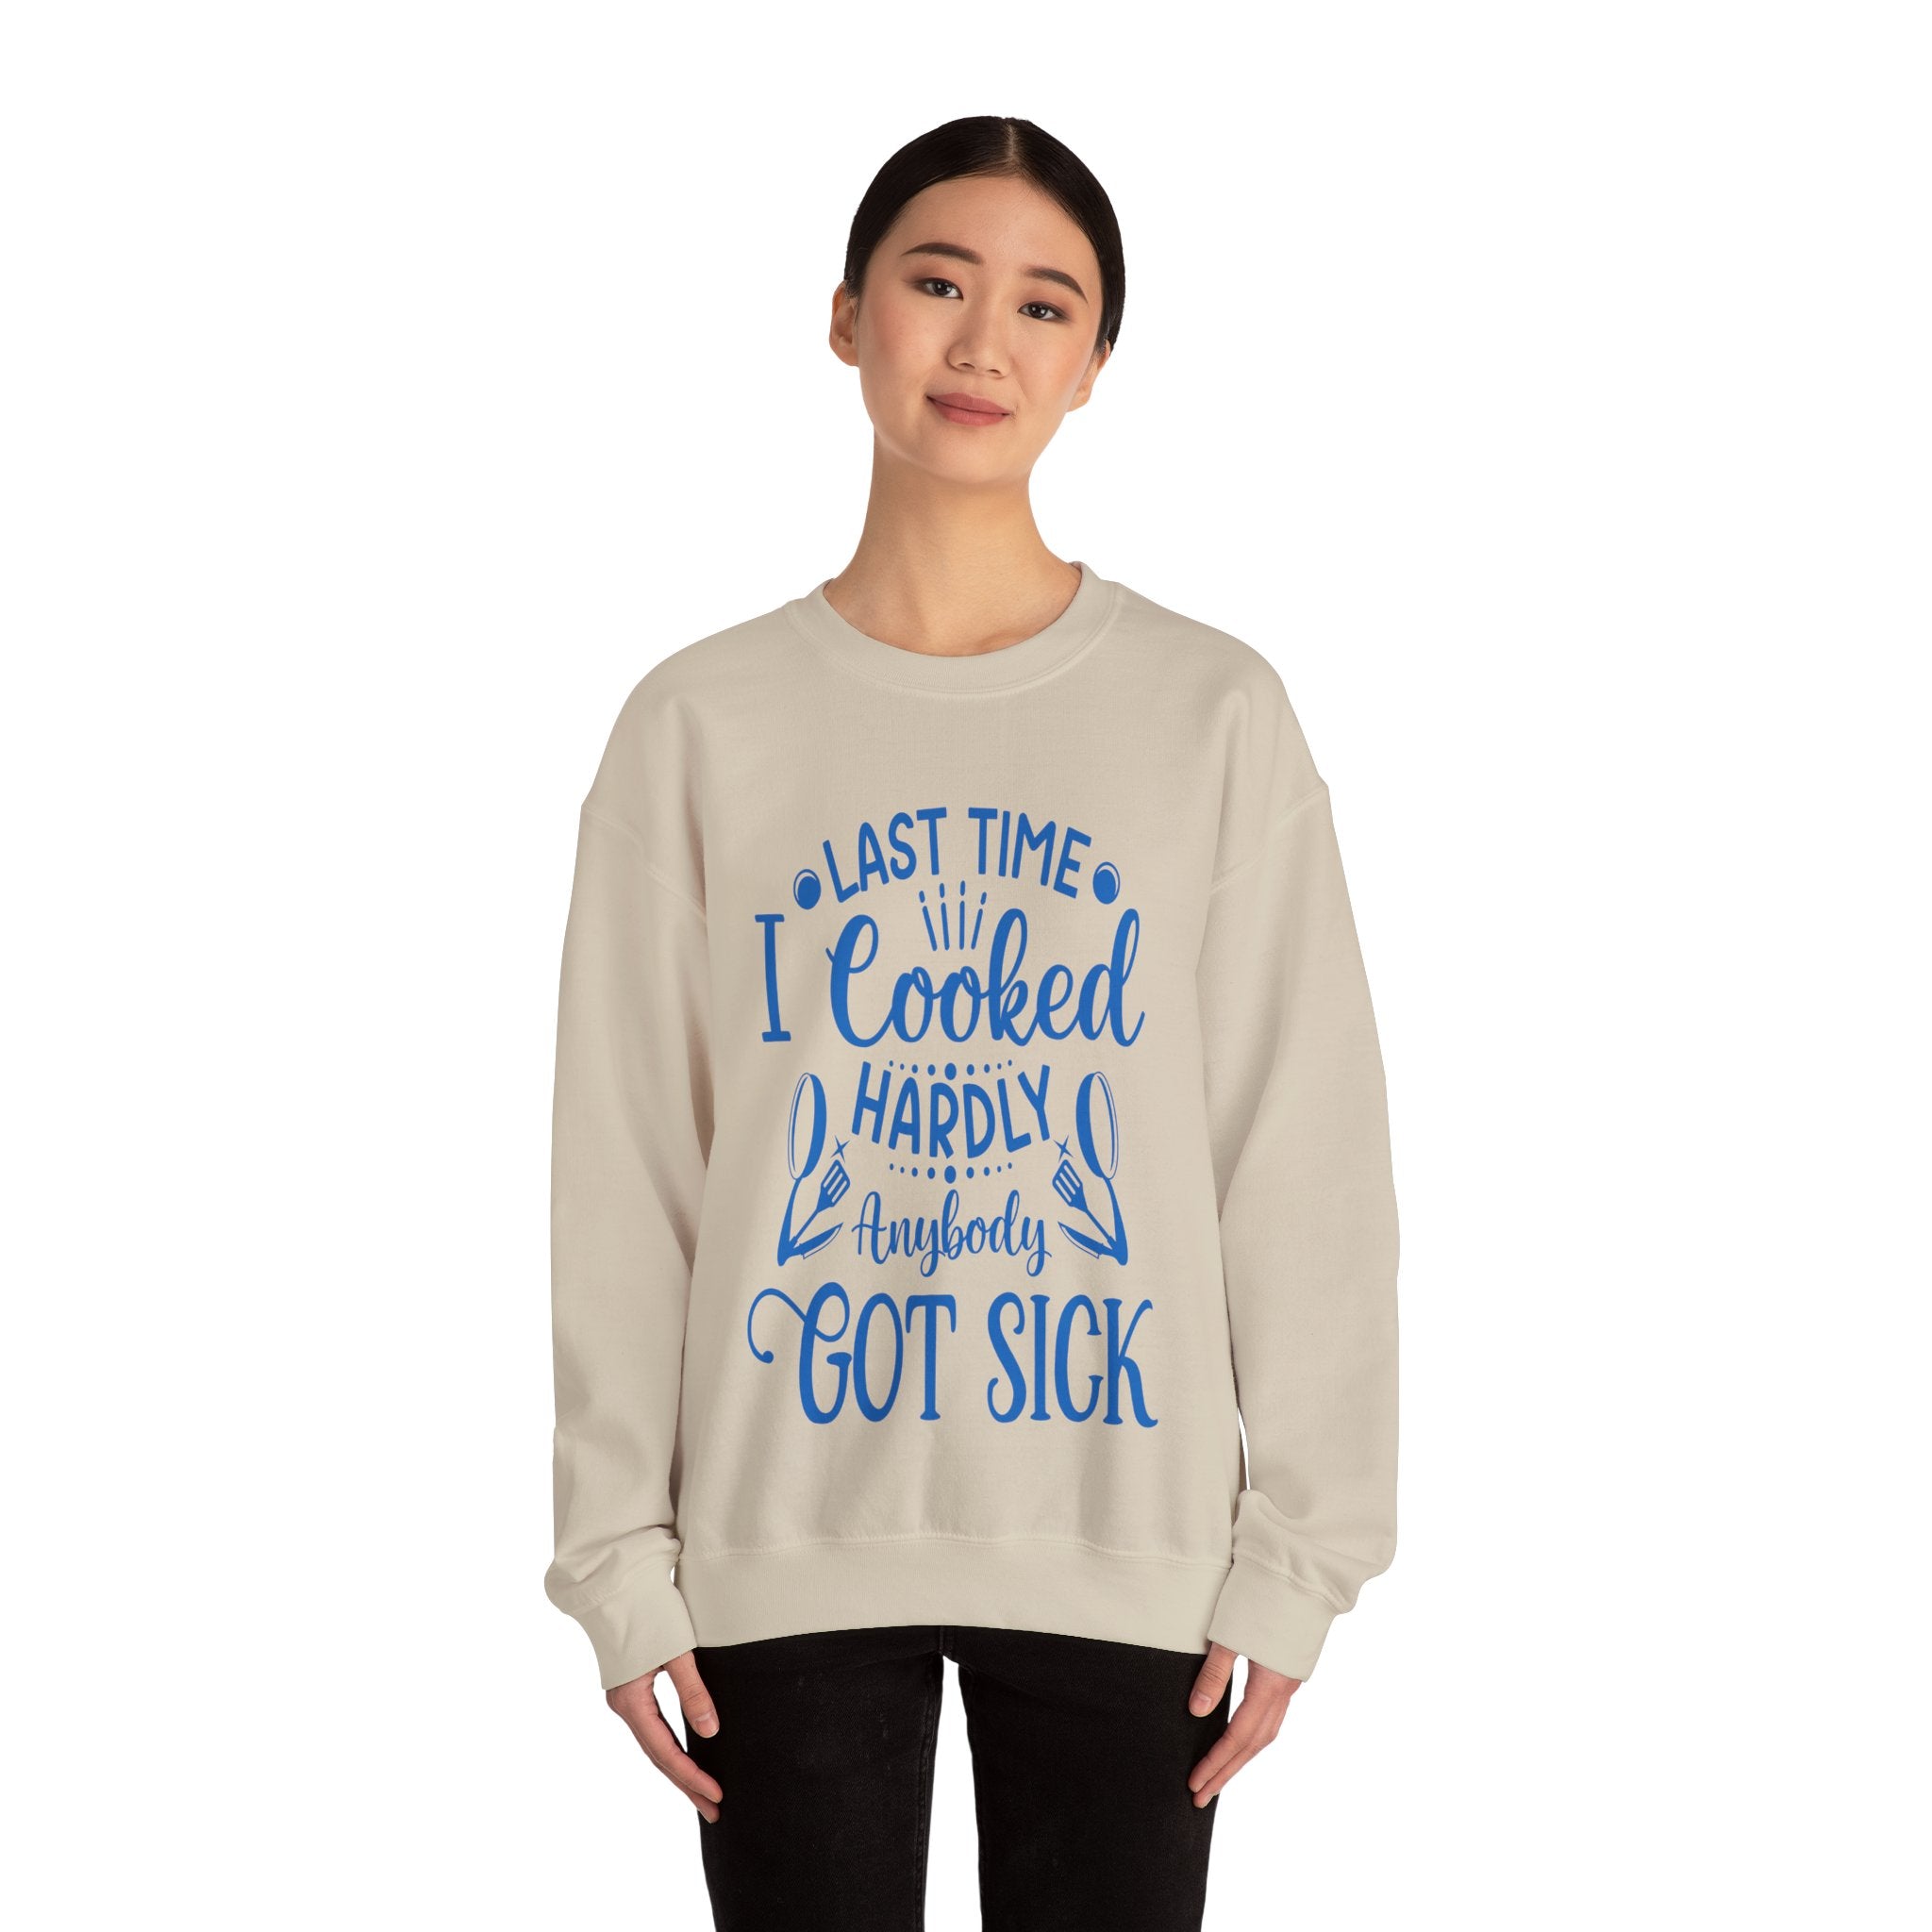 Cooking Expert Sweatshirt